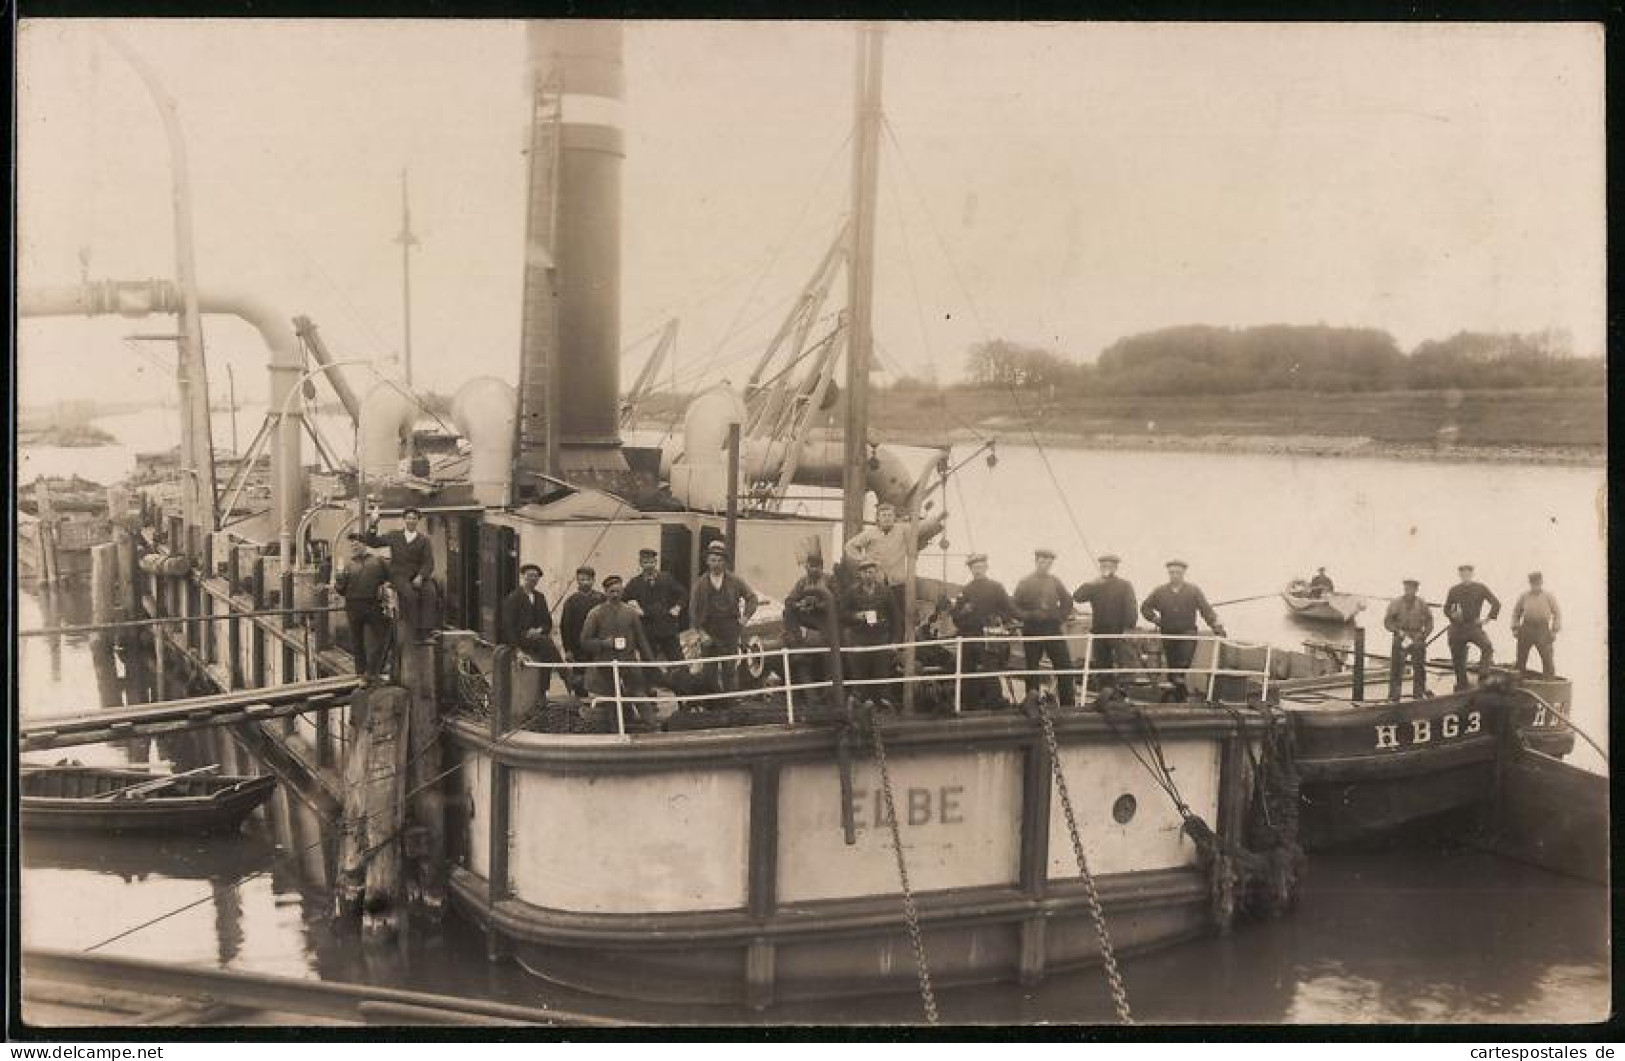 Fotografie Rothe & Co., Hamburg, Baggerschiff Elbe Mit Besatzung Beim Vertiefen Der Fahrrinne  - Schiffe